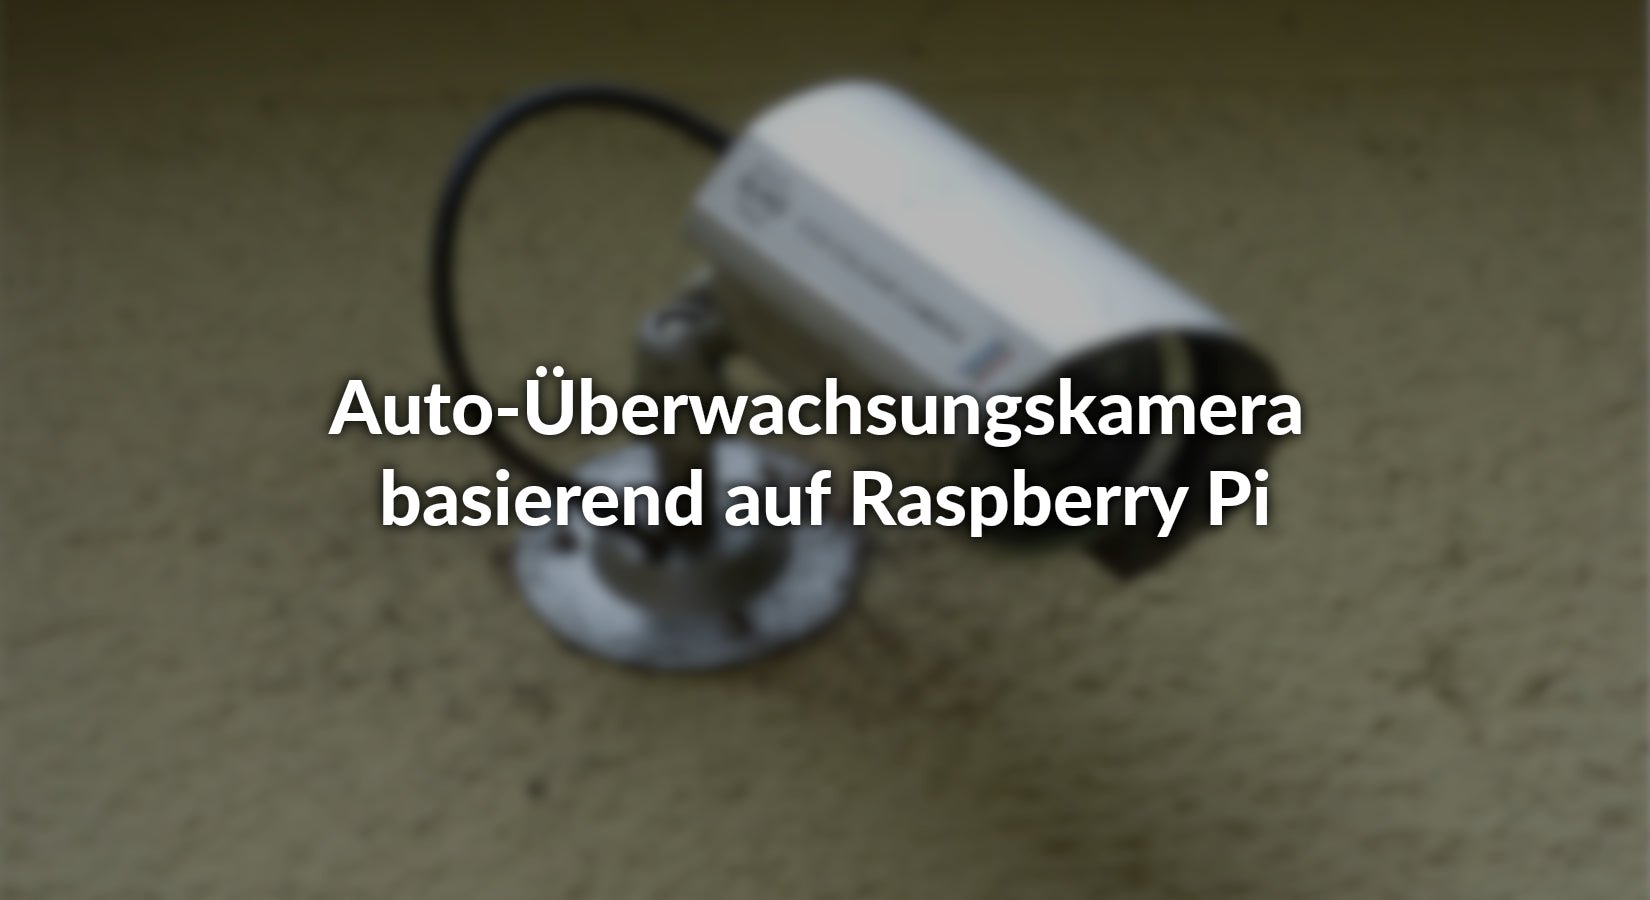 Auto-Überwachsungskamera basierend auf Raspberry Pi - AZ-Delivery